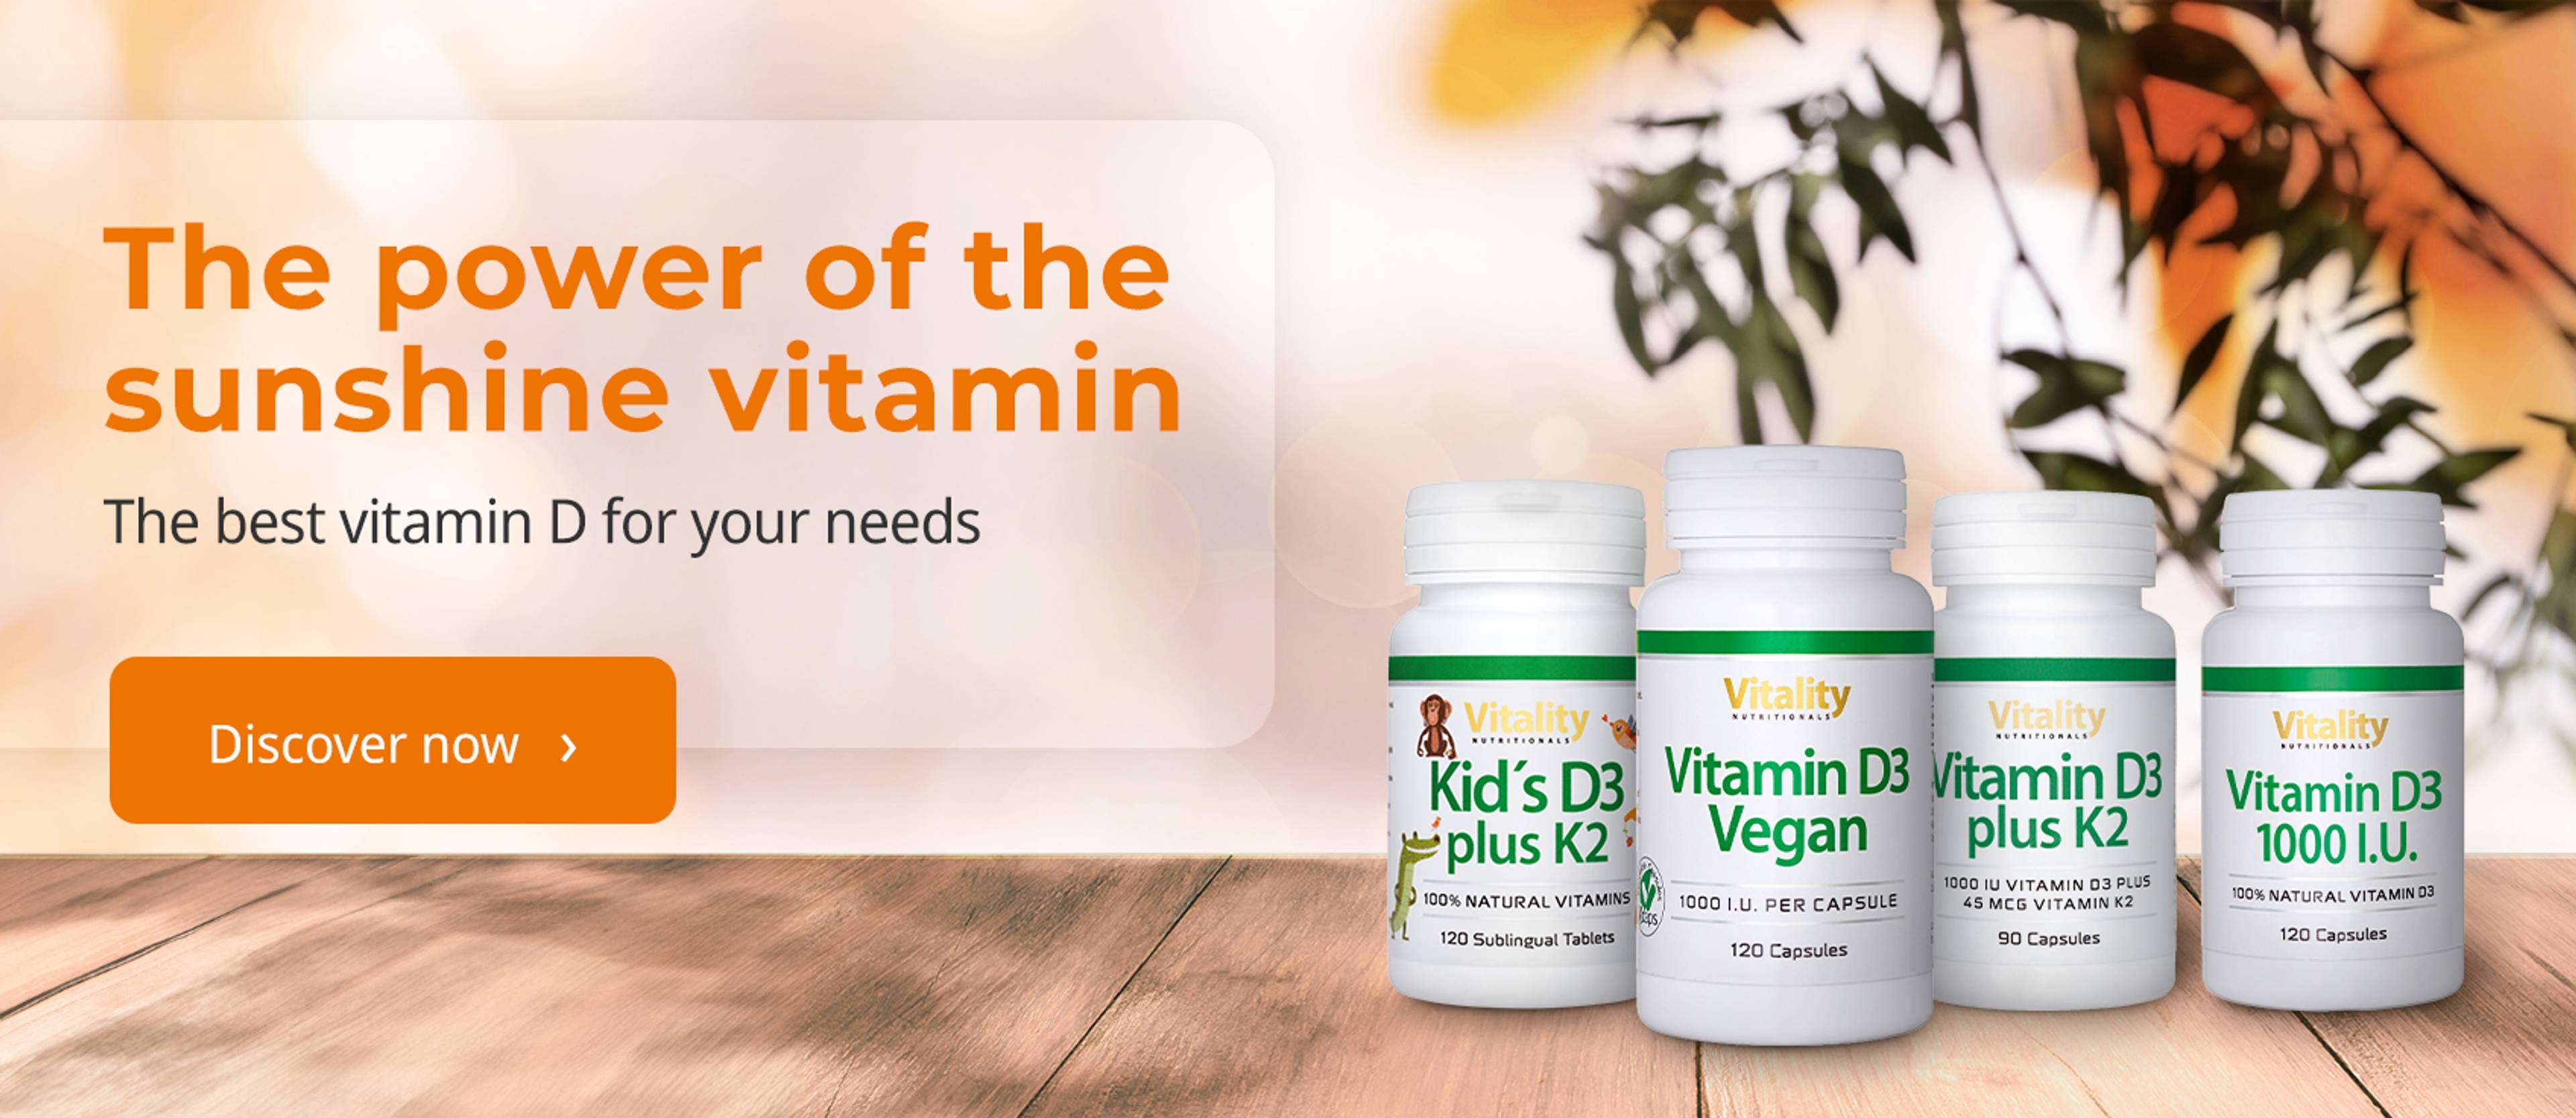 VE-Banner_Vitamin-D3-Sortiment_hero-slider_1696x736px_UK.jpg